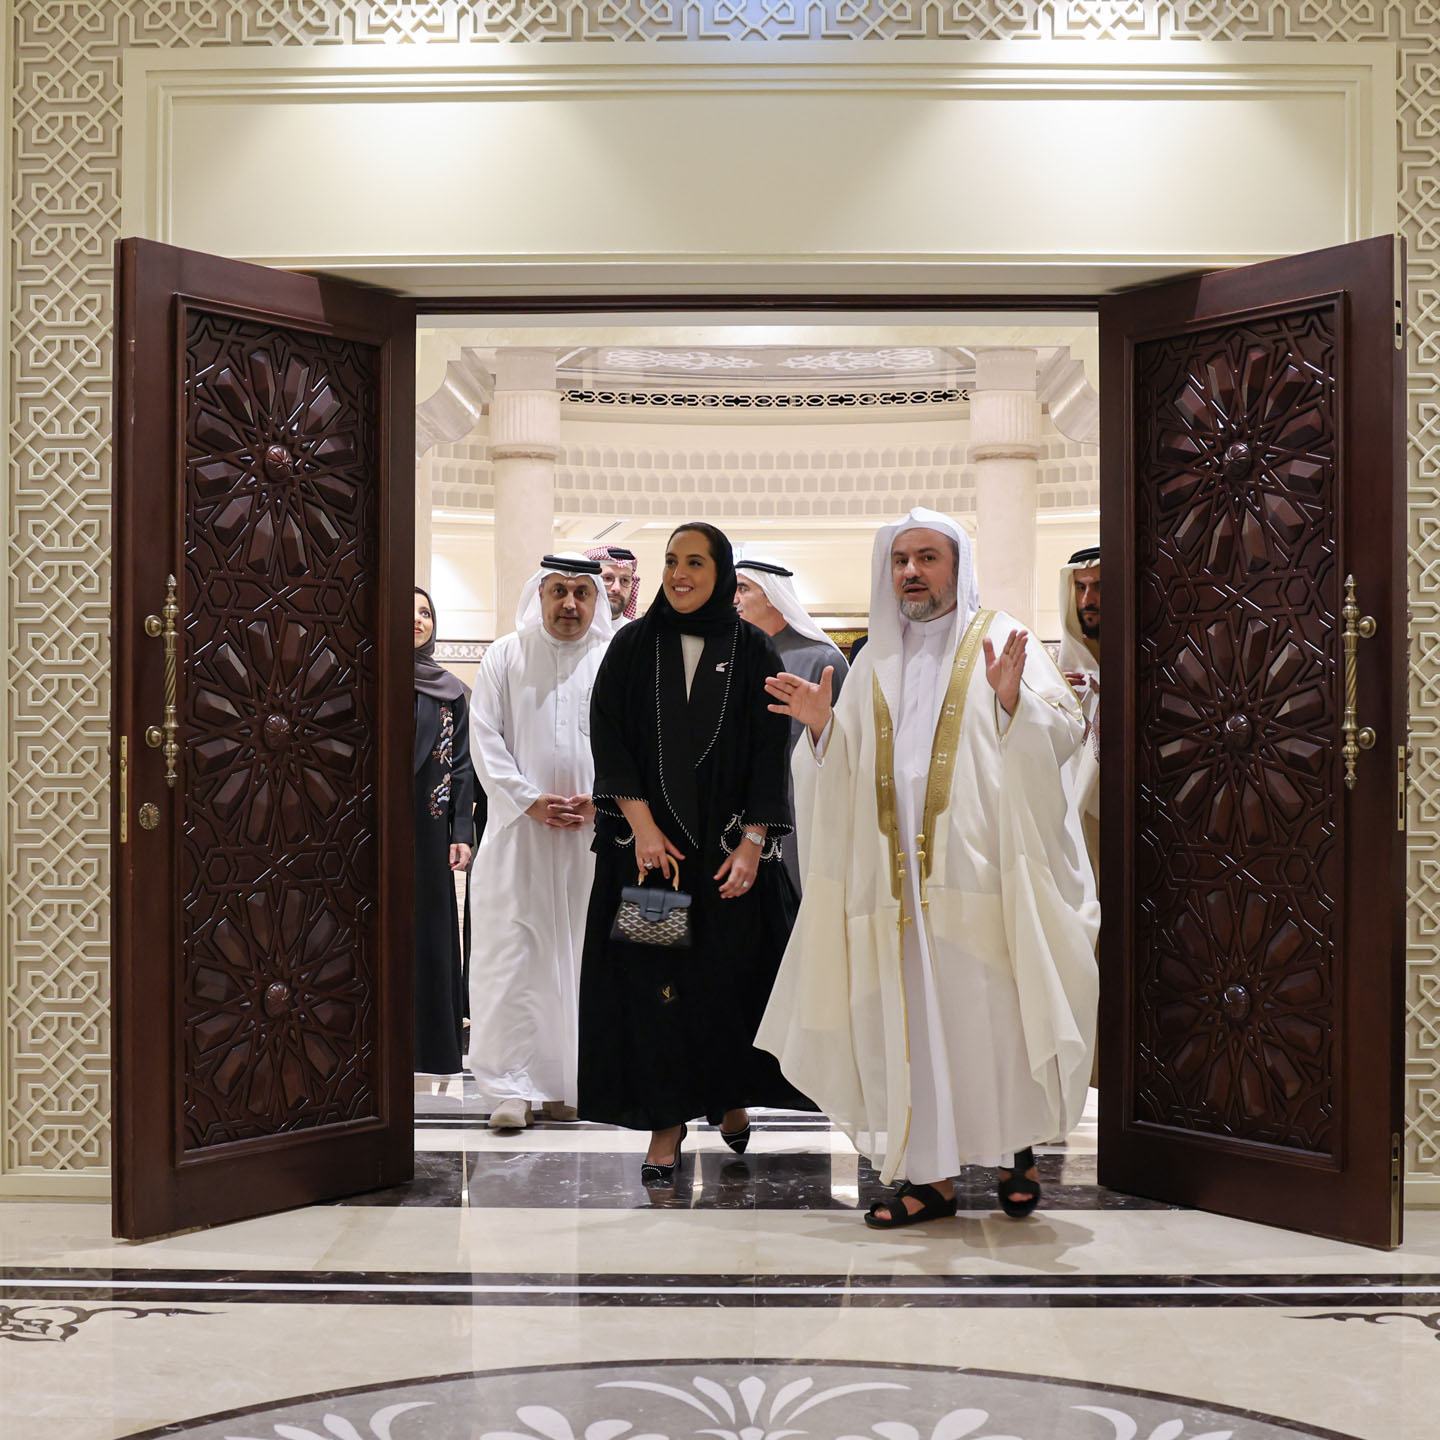 وزيرة الإسكان والتخطيط العمراني في البحرين: "مجمع القرآن الكريم بالشارقة يضم كنوزاً علمية ومعرفية عظيمة".